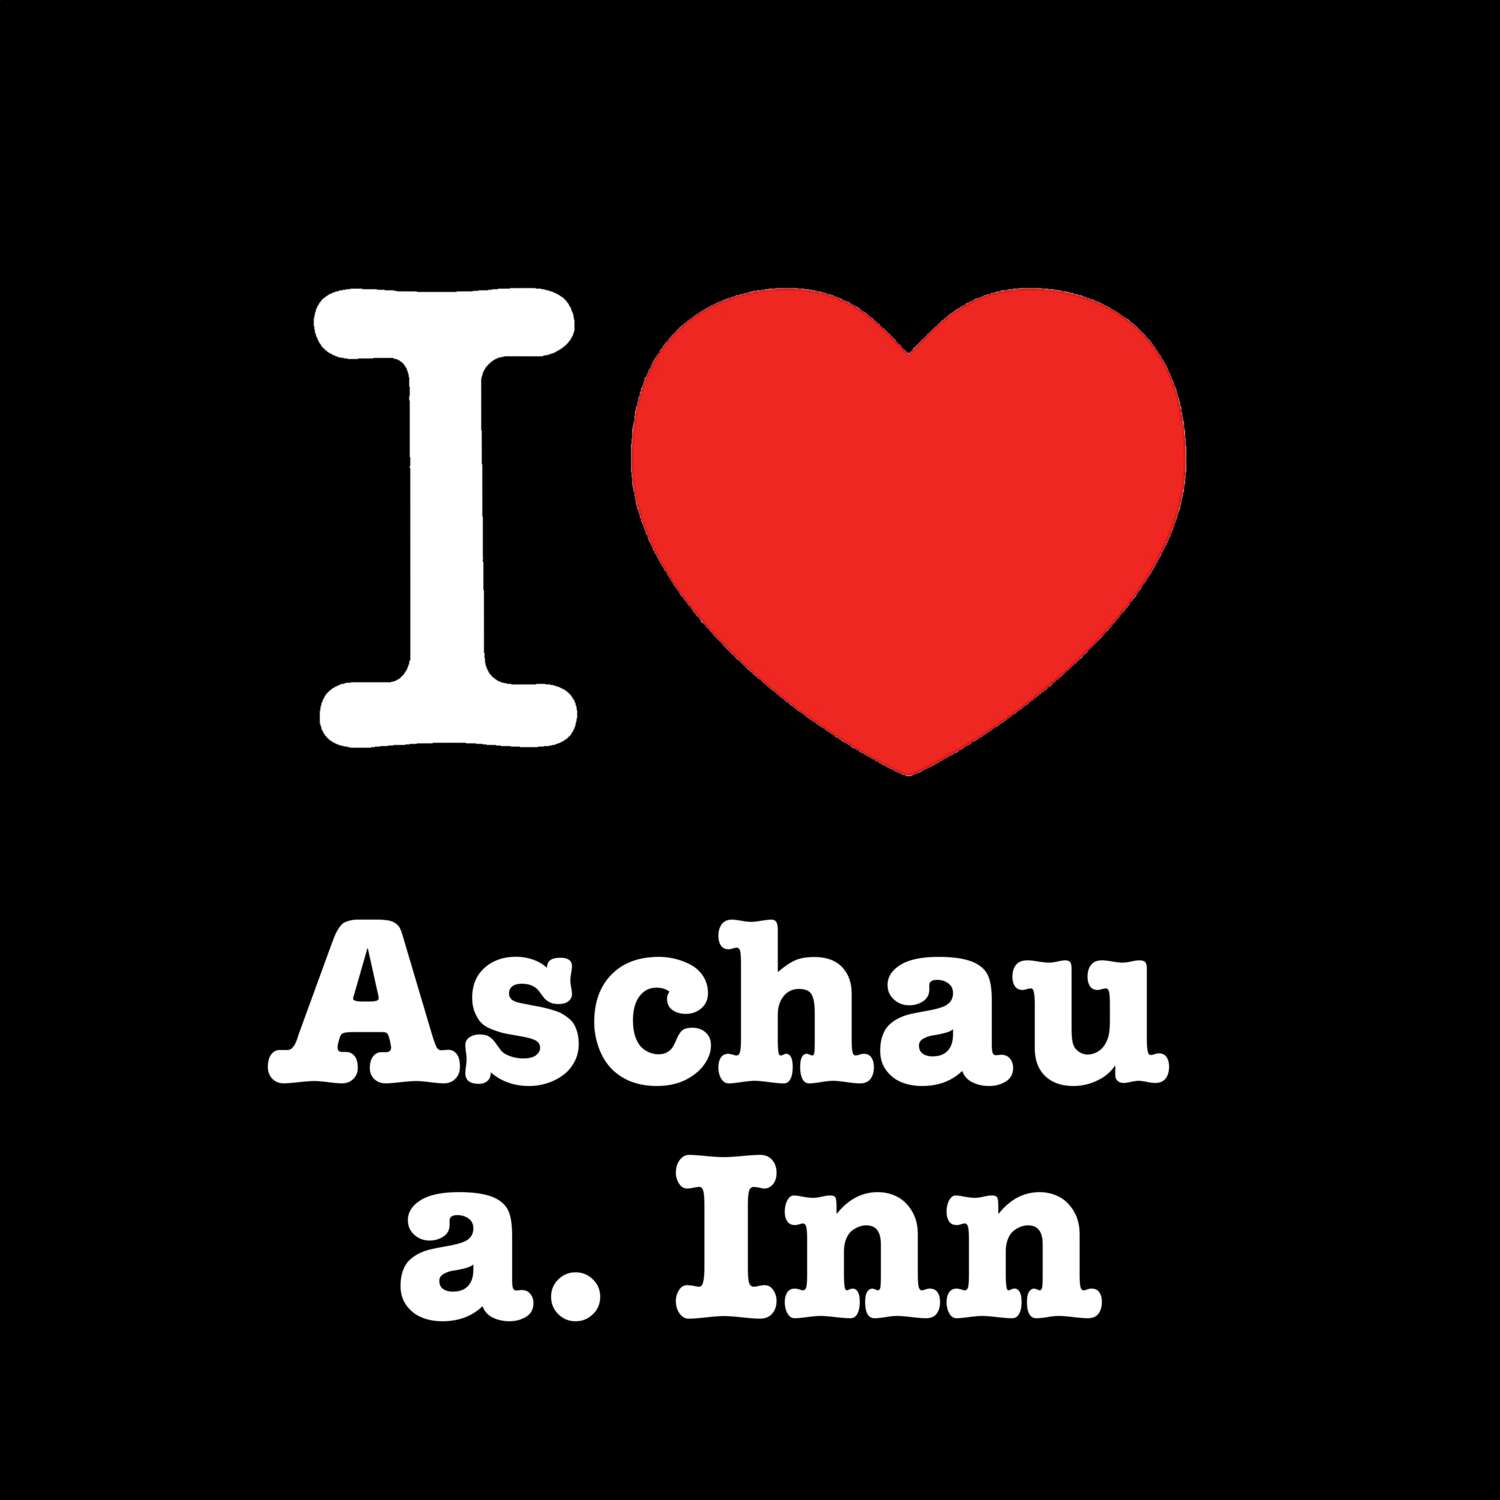 Aschau a. Inn T-Shirt »I love«